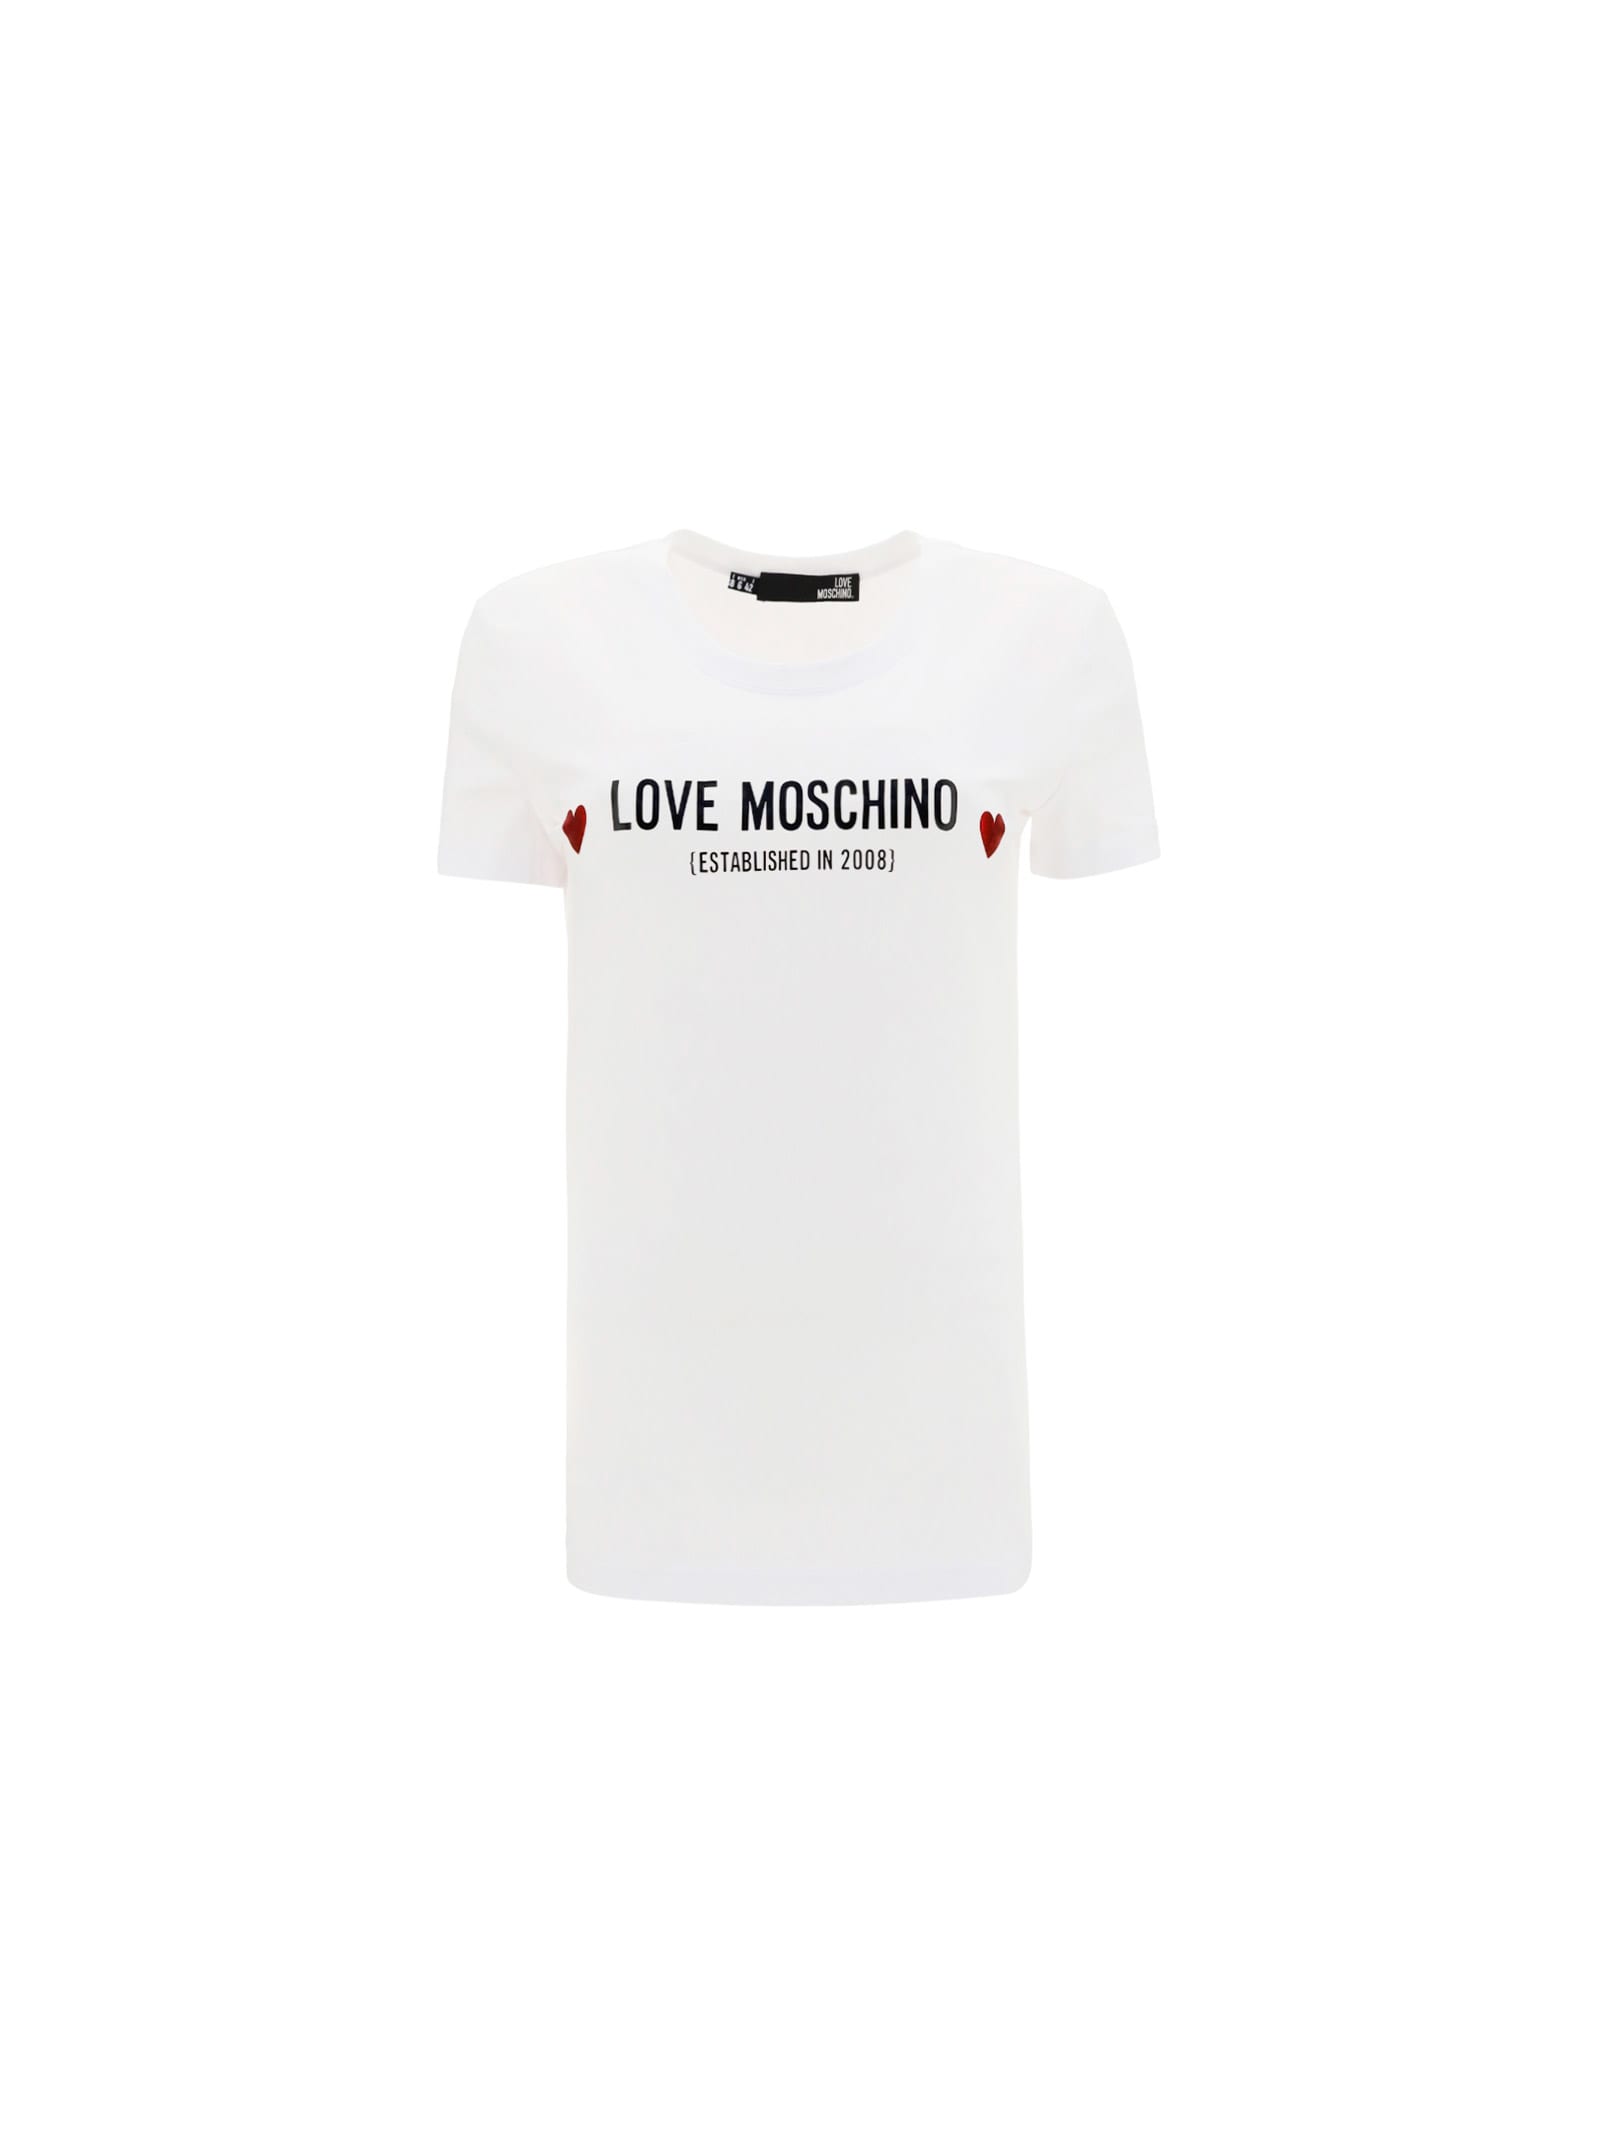 Love Moschino T-SHIRT